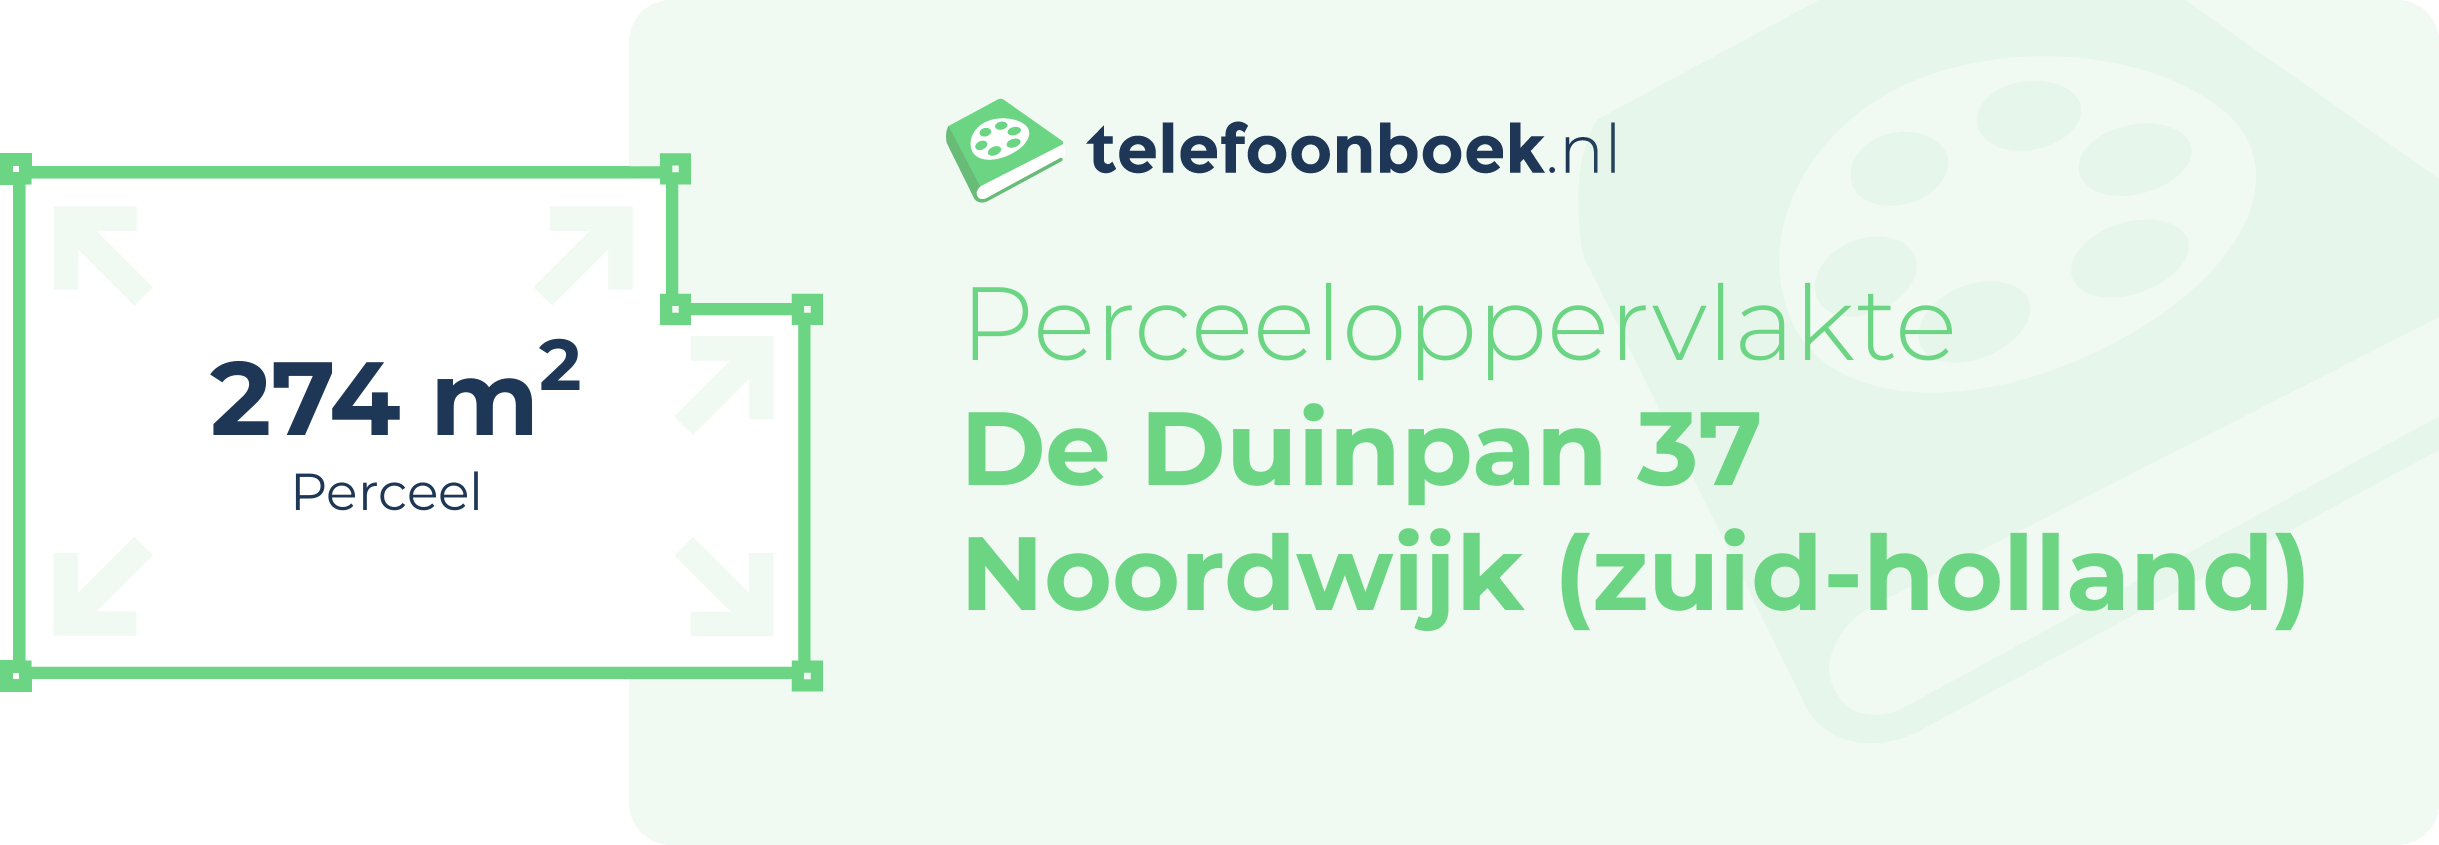 Perceeloppervlakte De Duinpan 37 Noordwijk (Zuid-Holland)